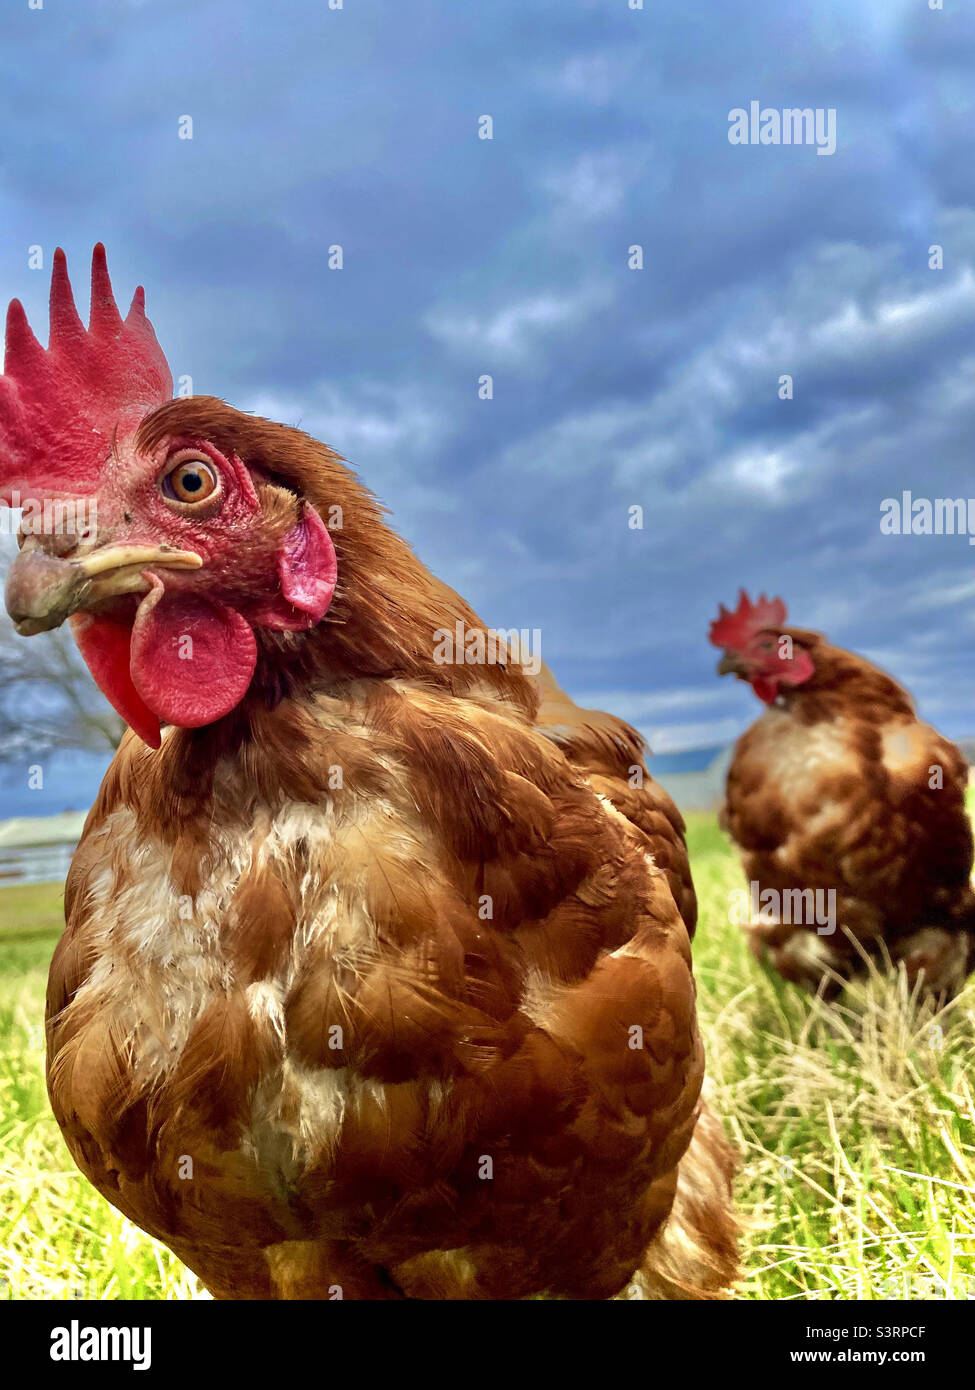 Vista desde el suelo de dos pollos marrones en césped verde con hermoso cielo azul nublado. Colores vibrantes. Pollos interesantes. Foto de stock